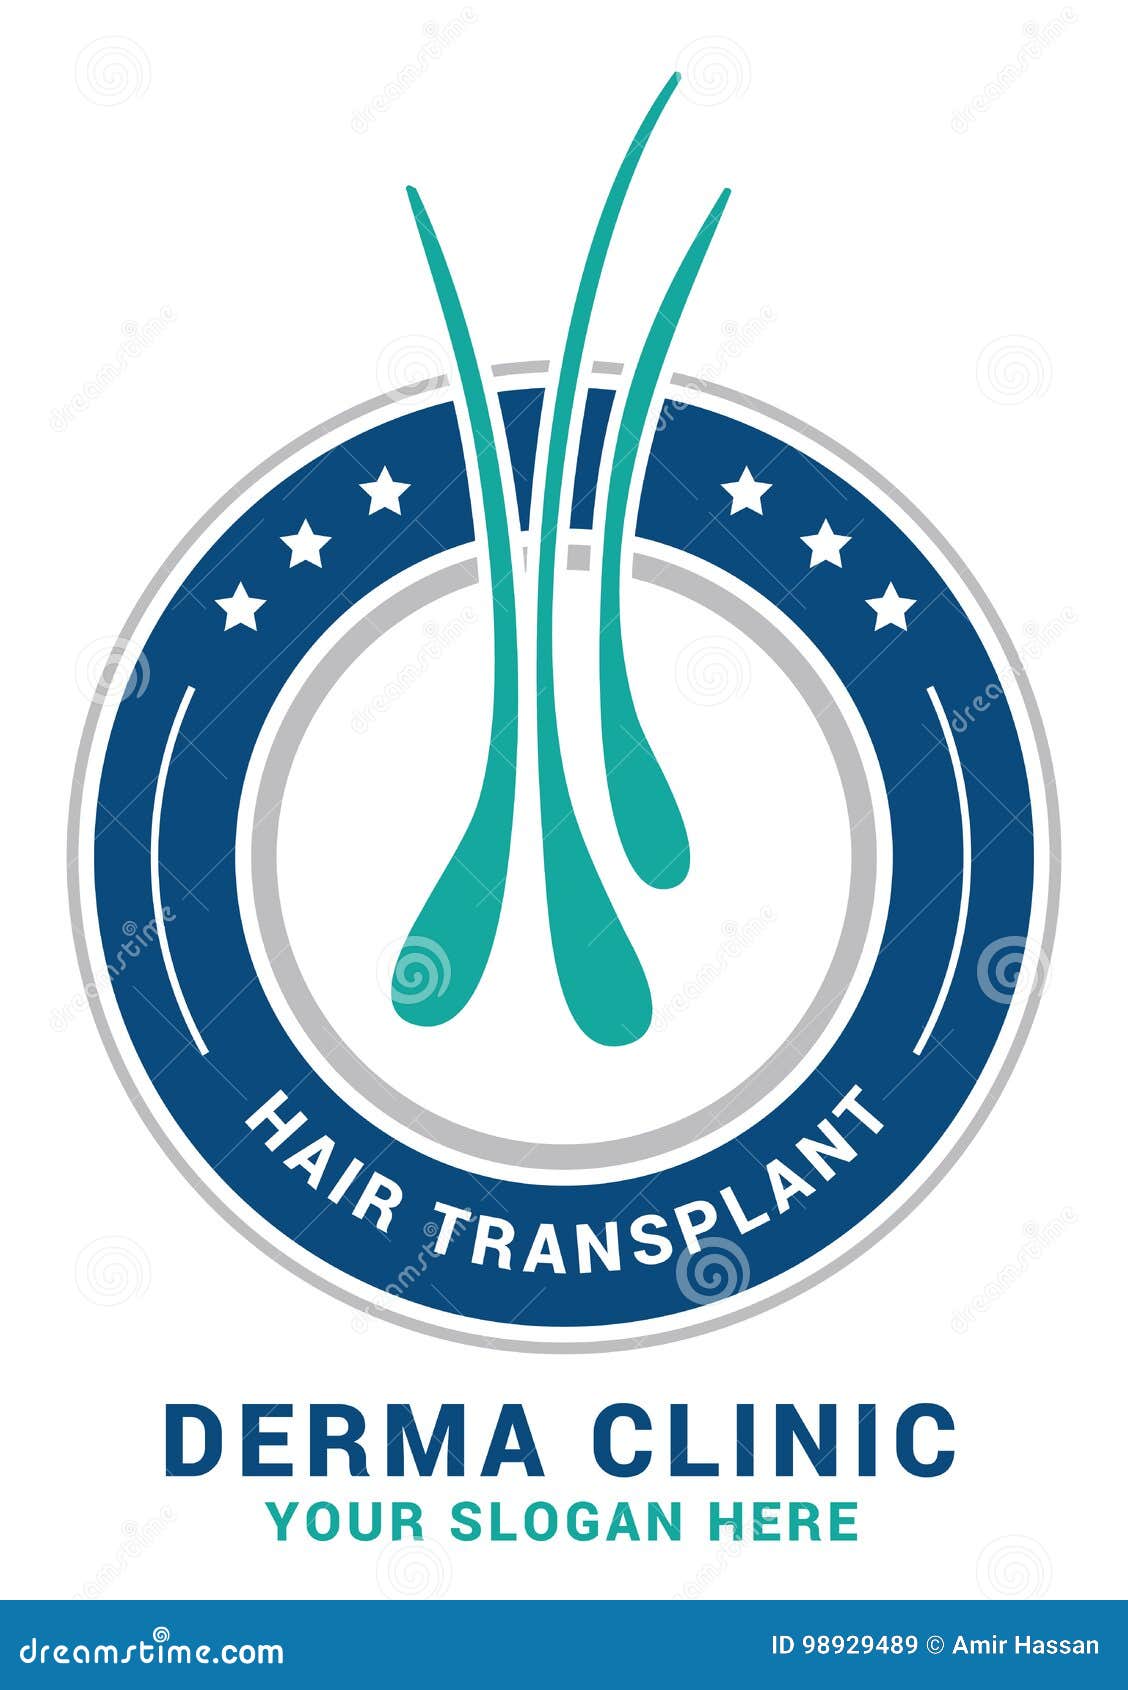 Home  Regrowth Hair Transplant Clinic  Hair Fall  Hair Loss Treatment